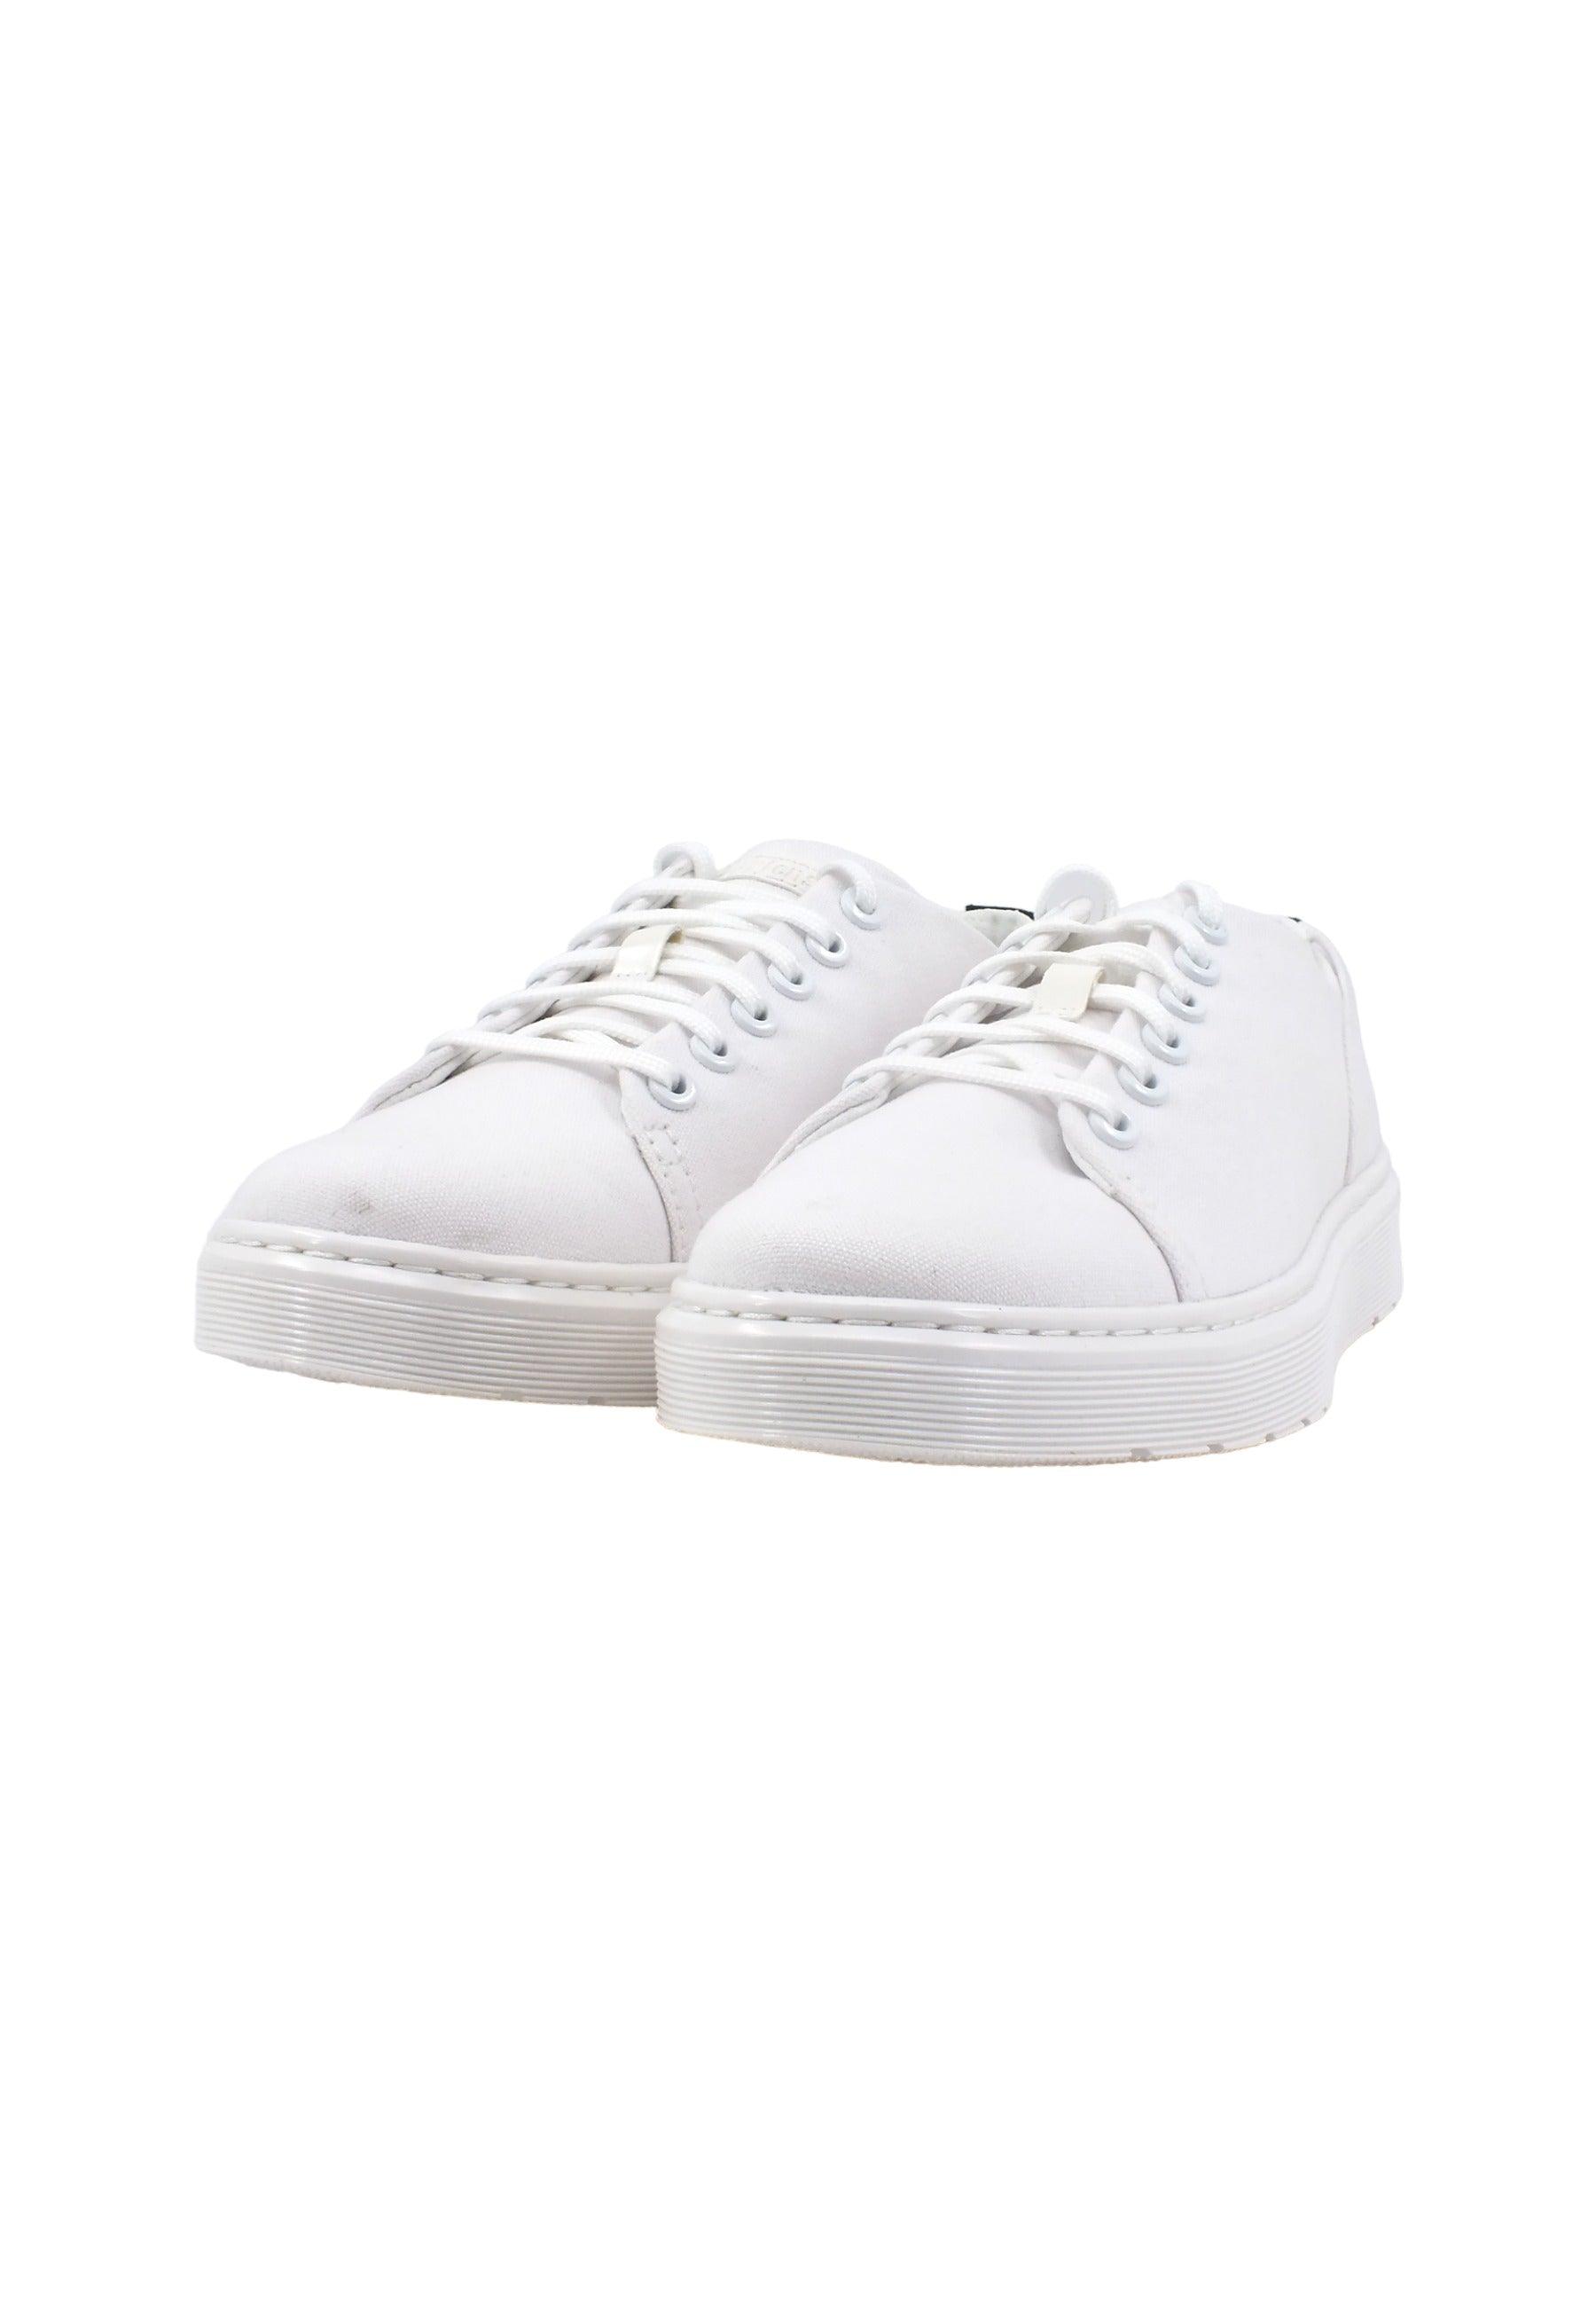 DR. MARTENS Sneaker Canvas Uomo White DANTE-27421100 - Sandrini Calzature e Abbigliamento